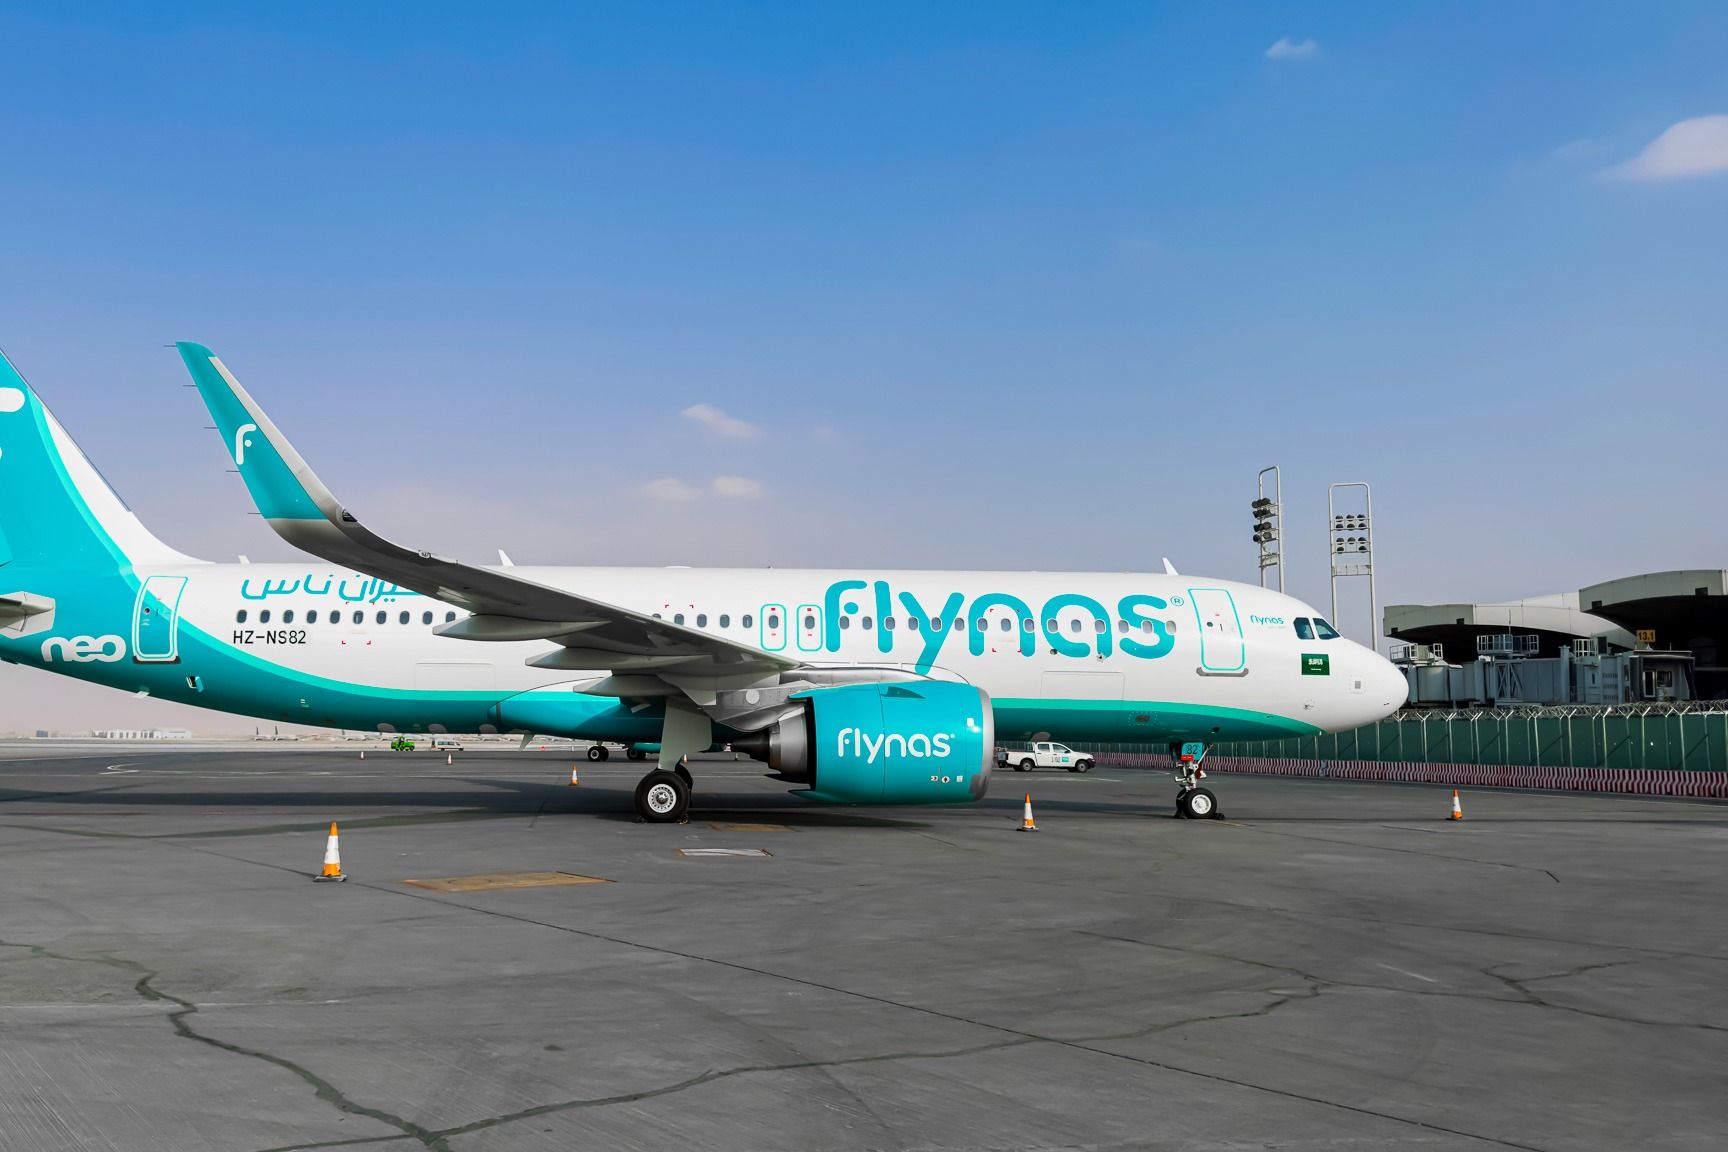 flynas new Airbus A320neo at Riyadh